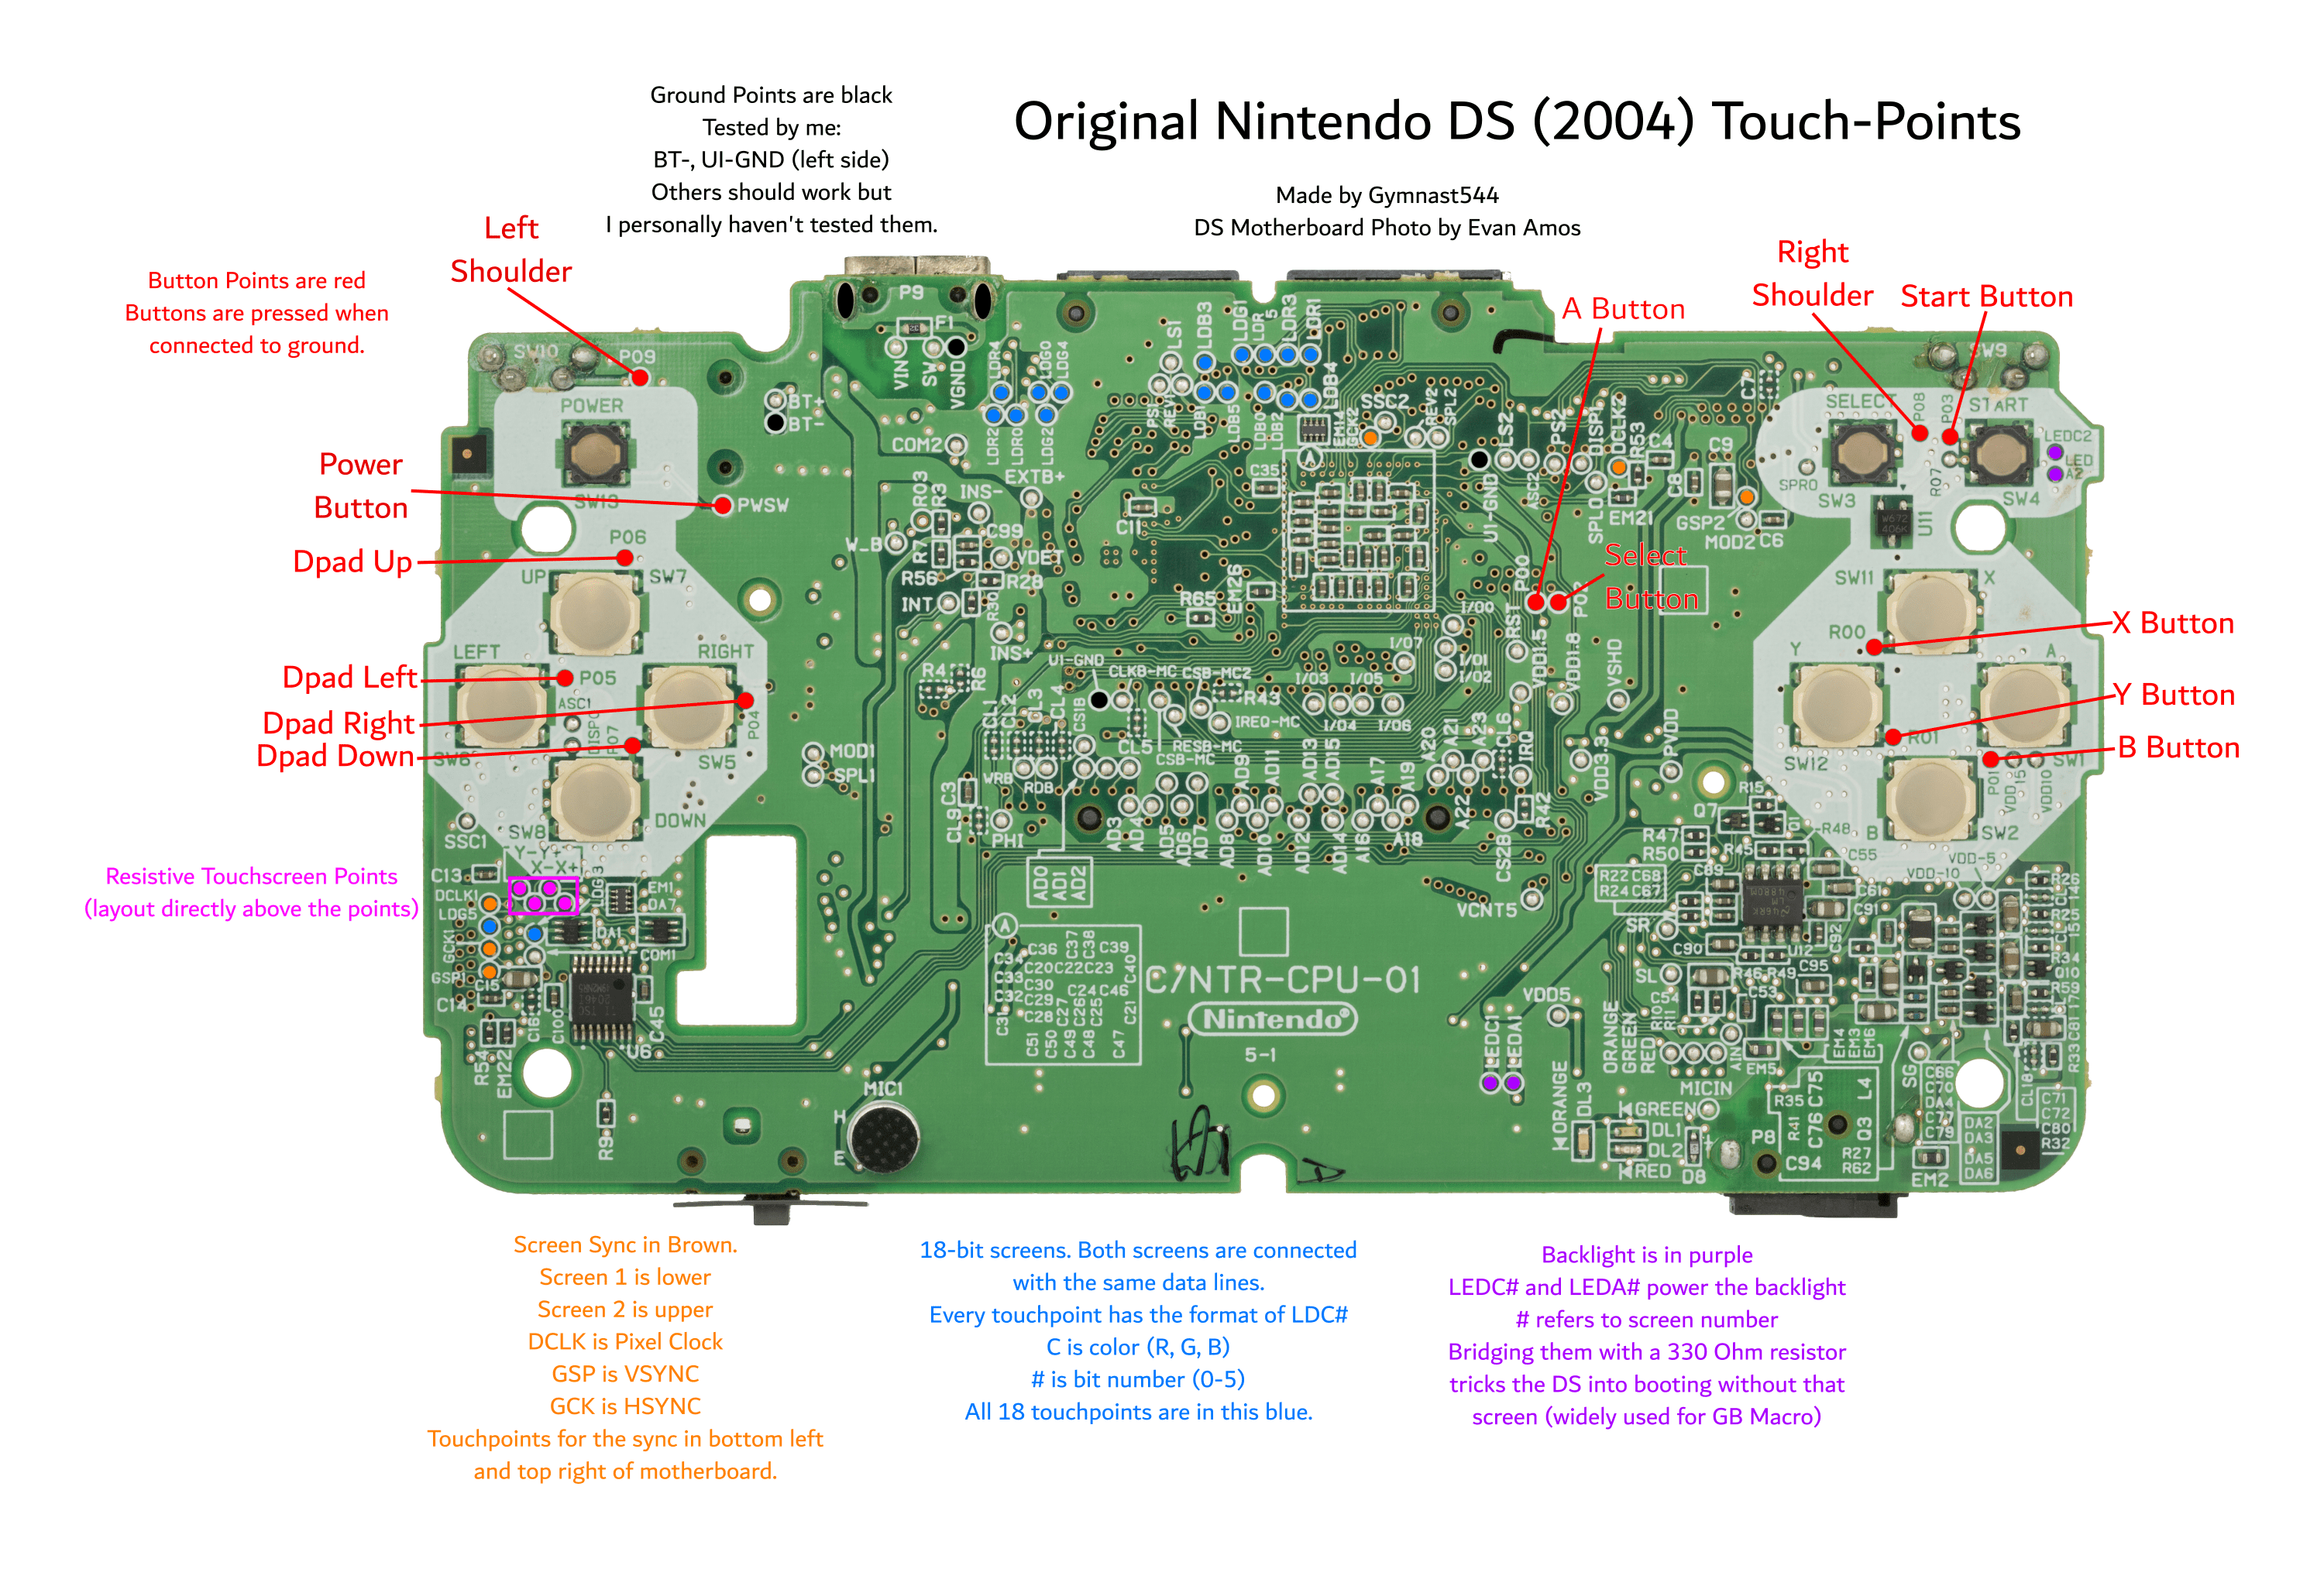 Carte mère de la DS originale avec les points tactiles étiquetés